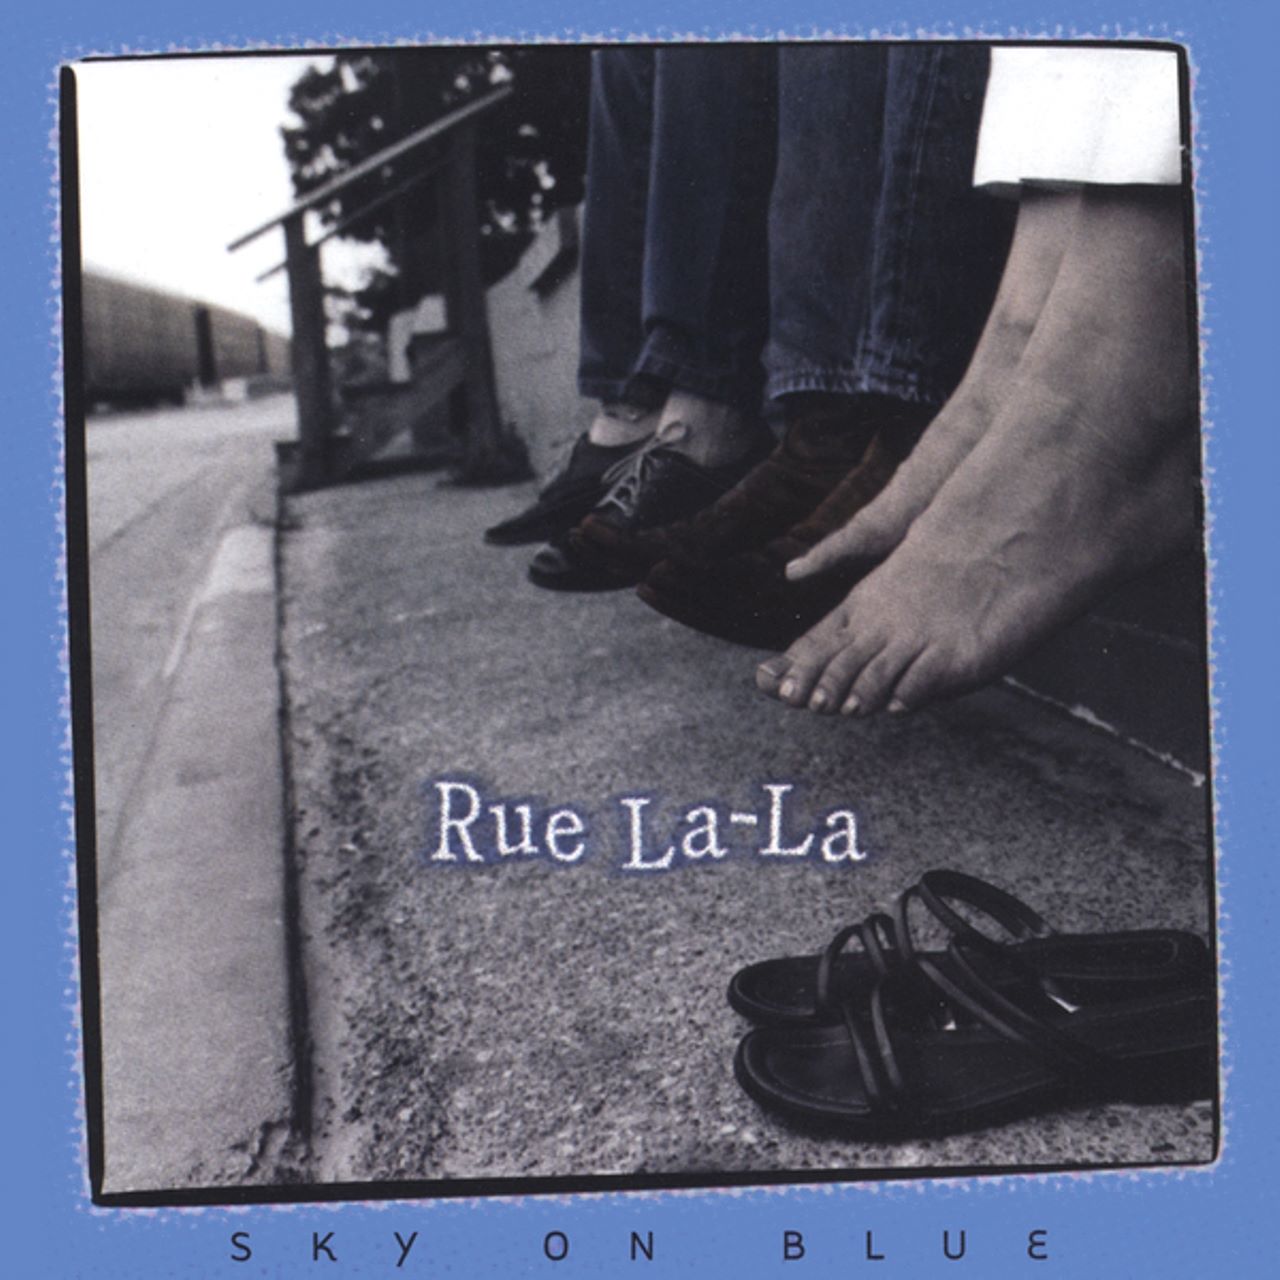 Rue La-La - Sky On Blue cover album